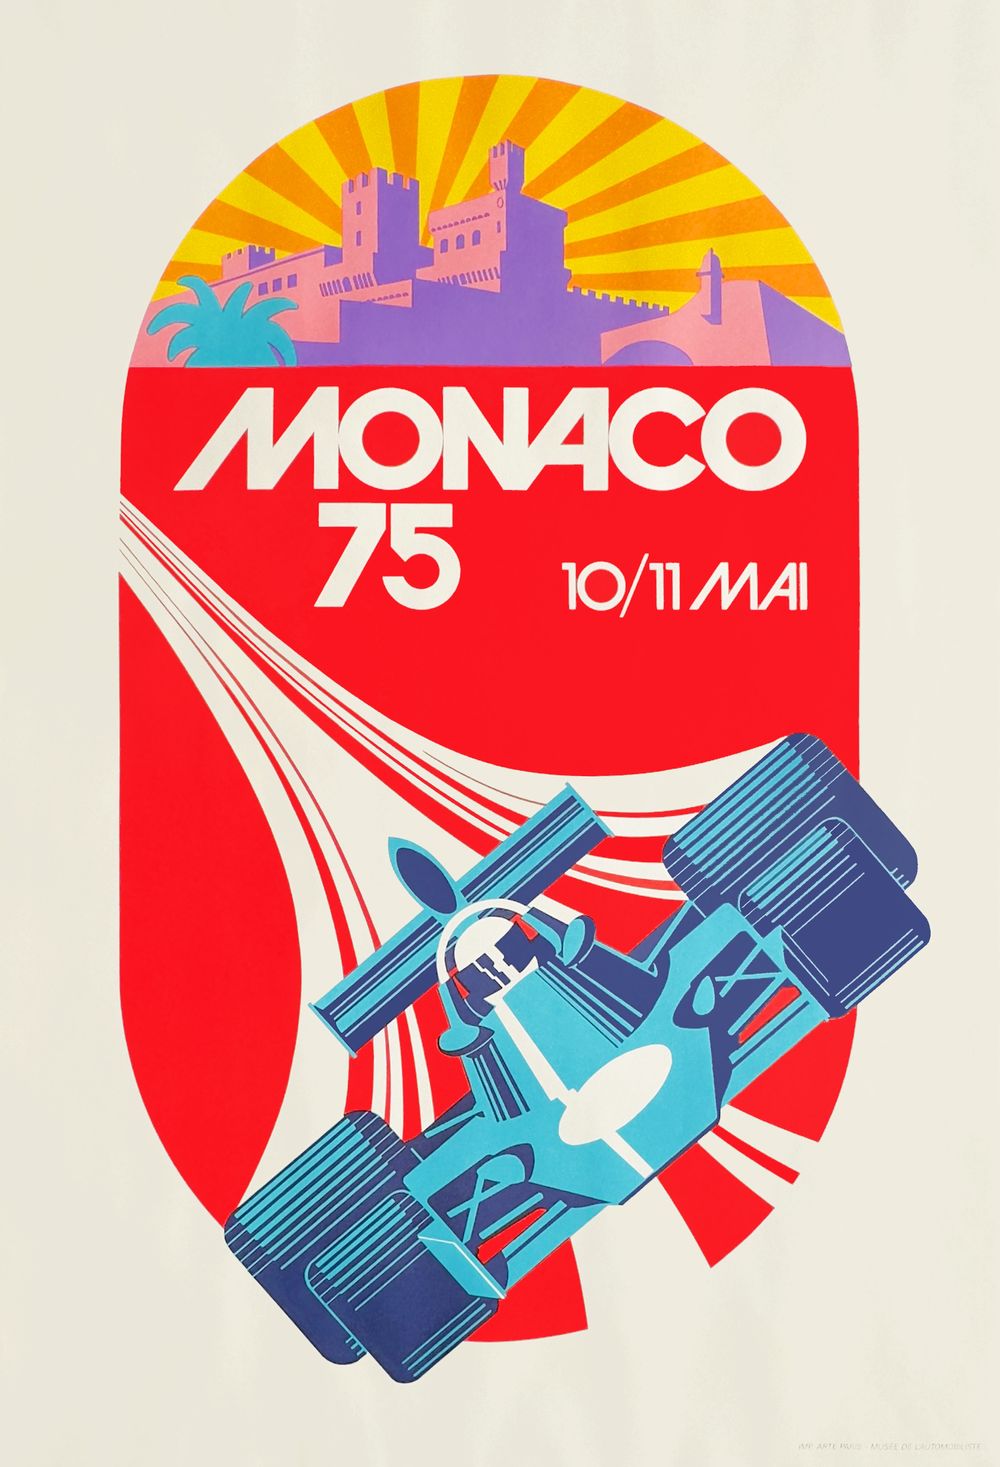 Monaco 1975 Grand Prix automobile